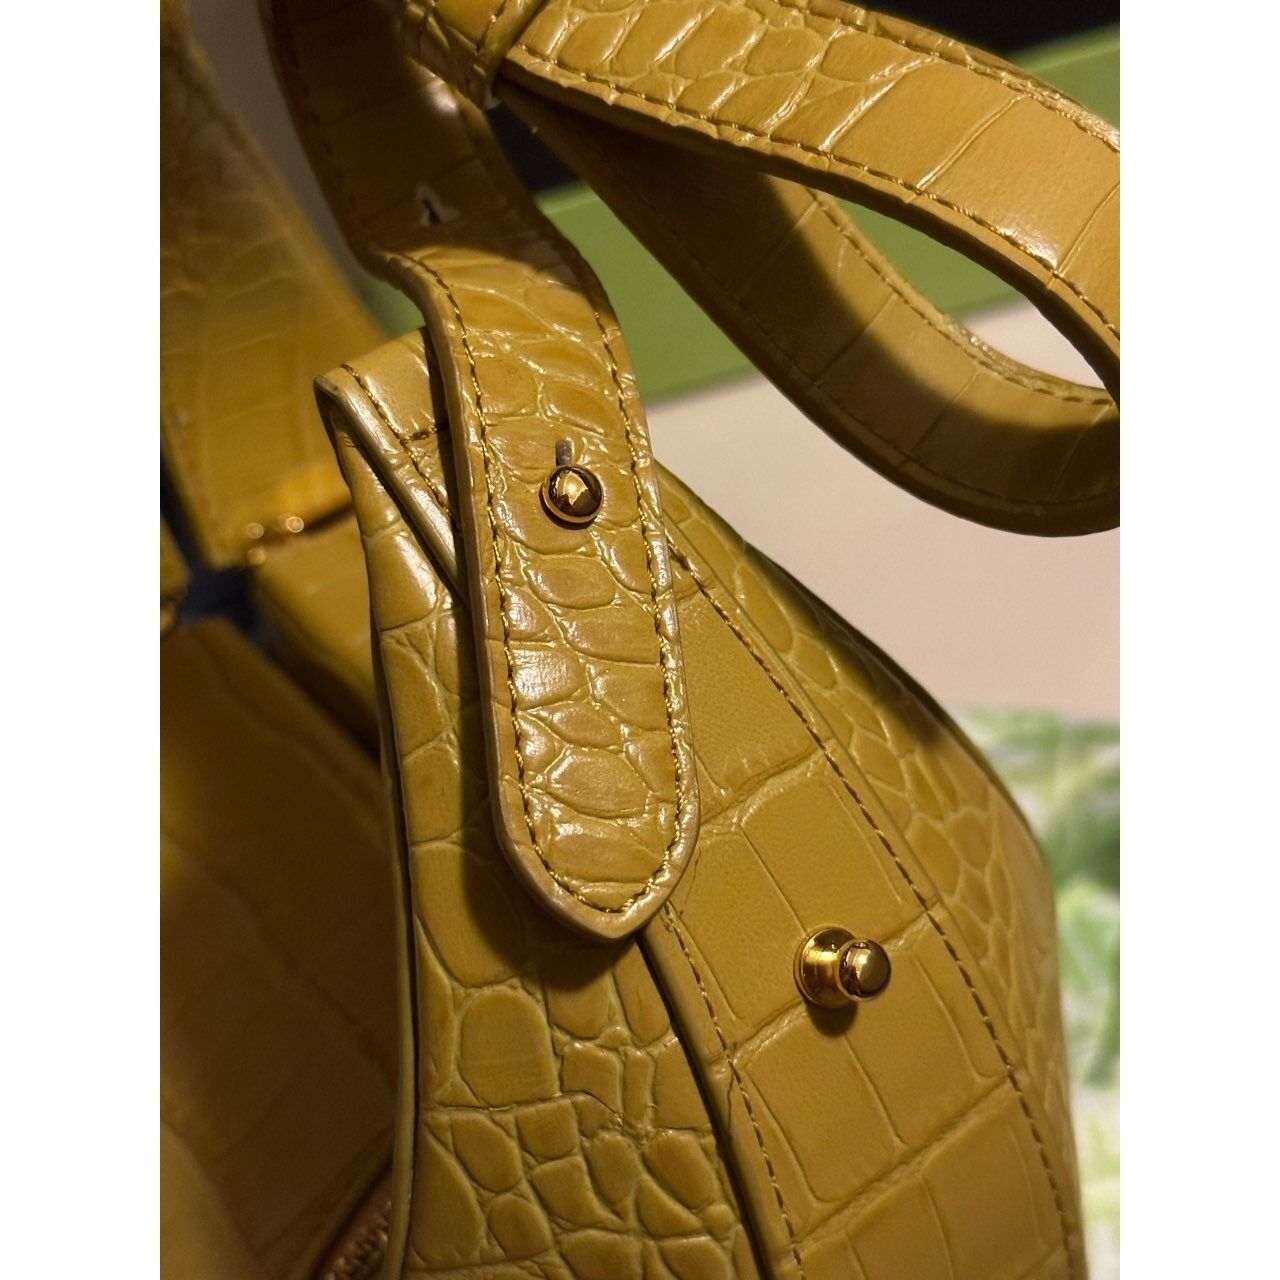 JW PEI Yellow Animal Print Handbag